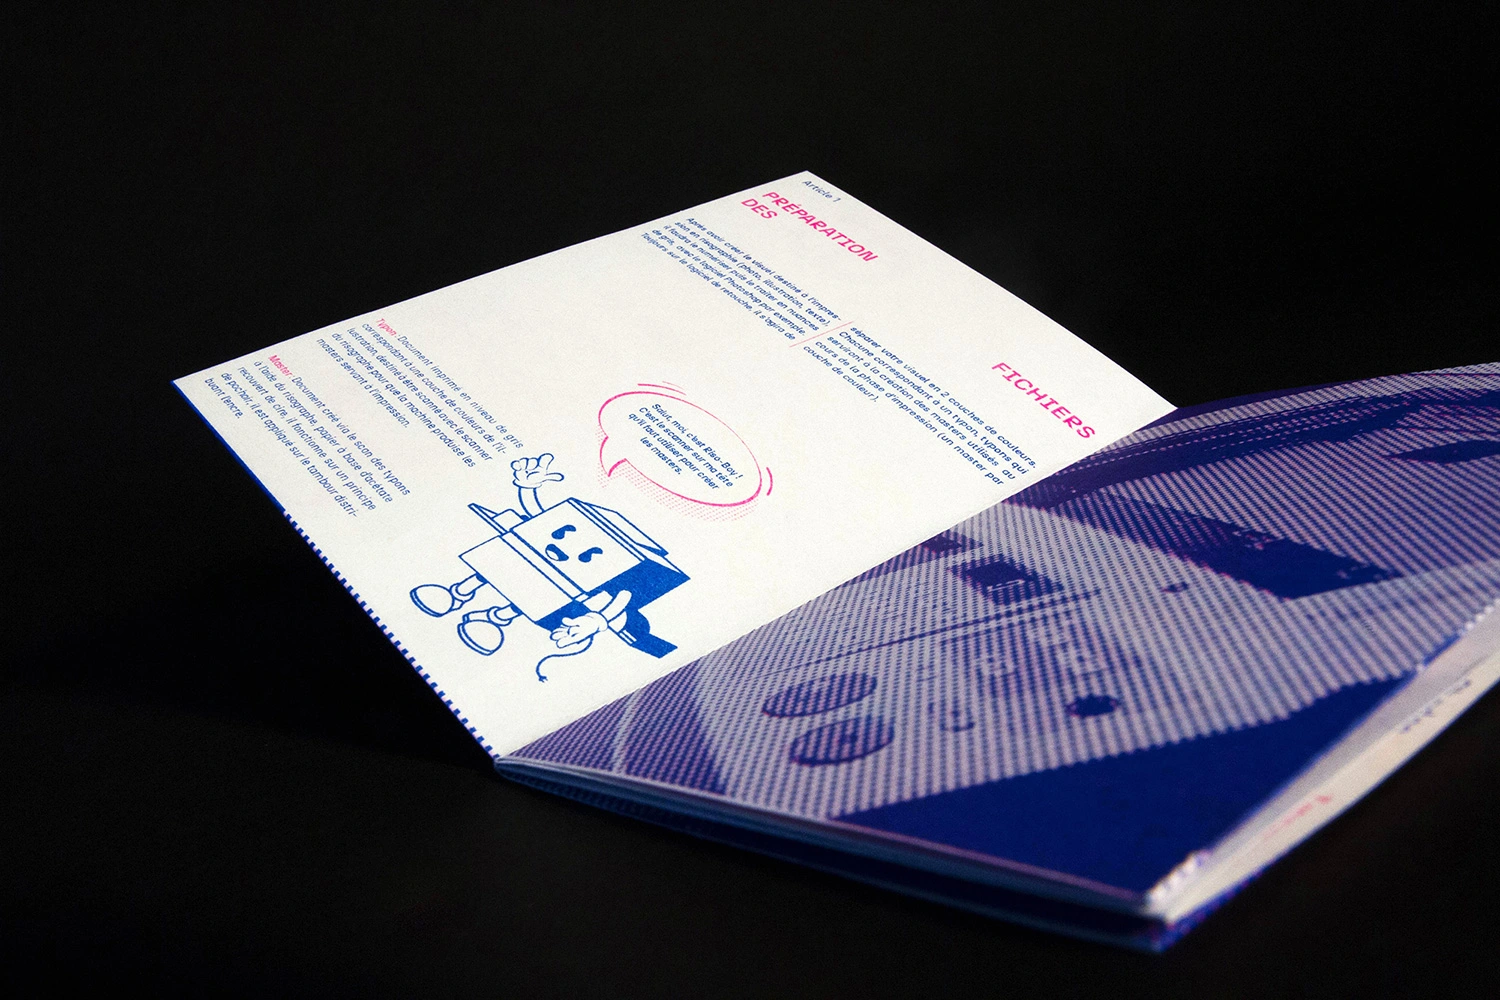 Fanzine sur l'impression en risographie, Riso-Riso, réalisé en Partenariat avec l'atelier de Risographie parisien Quintal, 2021-2022